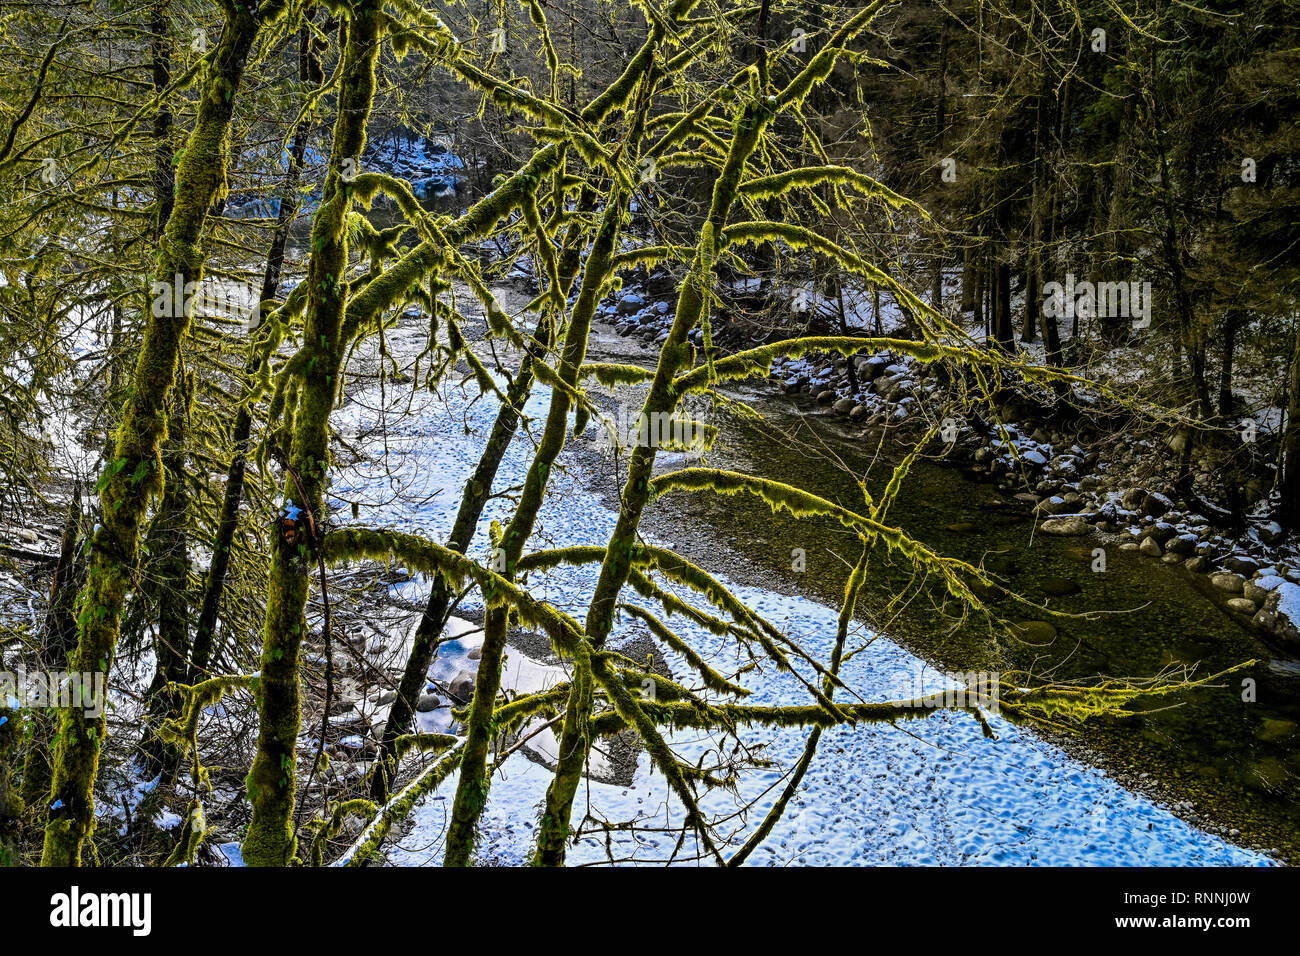 La rivière Seymour, hiver, Réserve de conservation Lower Seymour, North Vancouver, Colombie-Britannique, Canada Banque D'Images